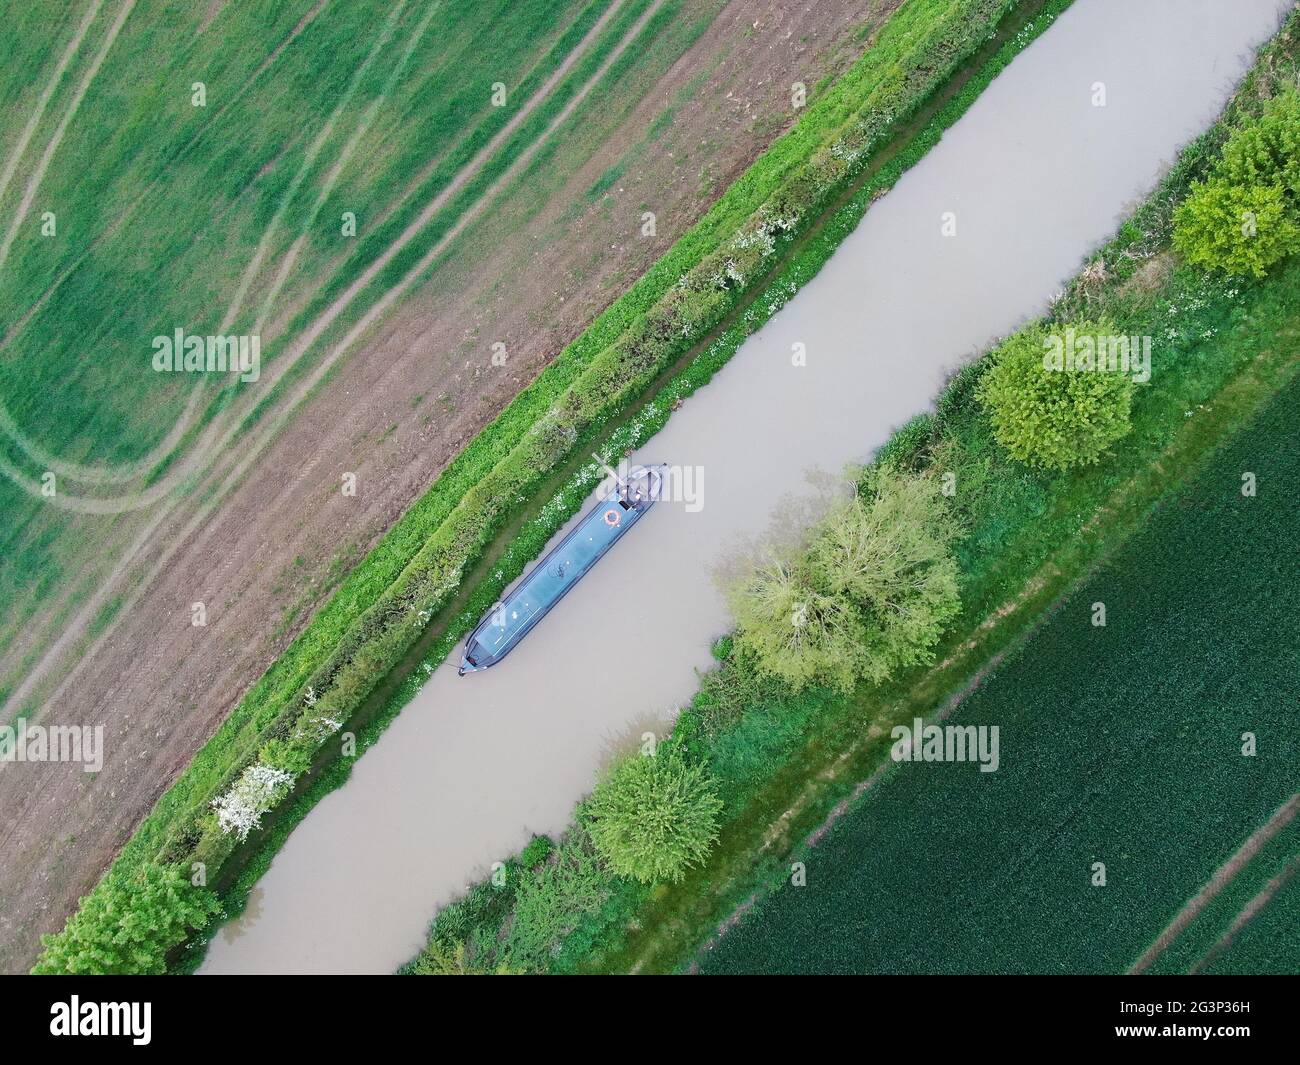 vue aérienne d'un seul bateau à rames amarré dans un cadre rural Banque D'Images